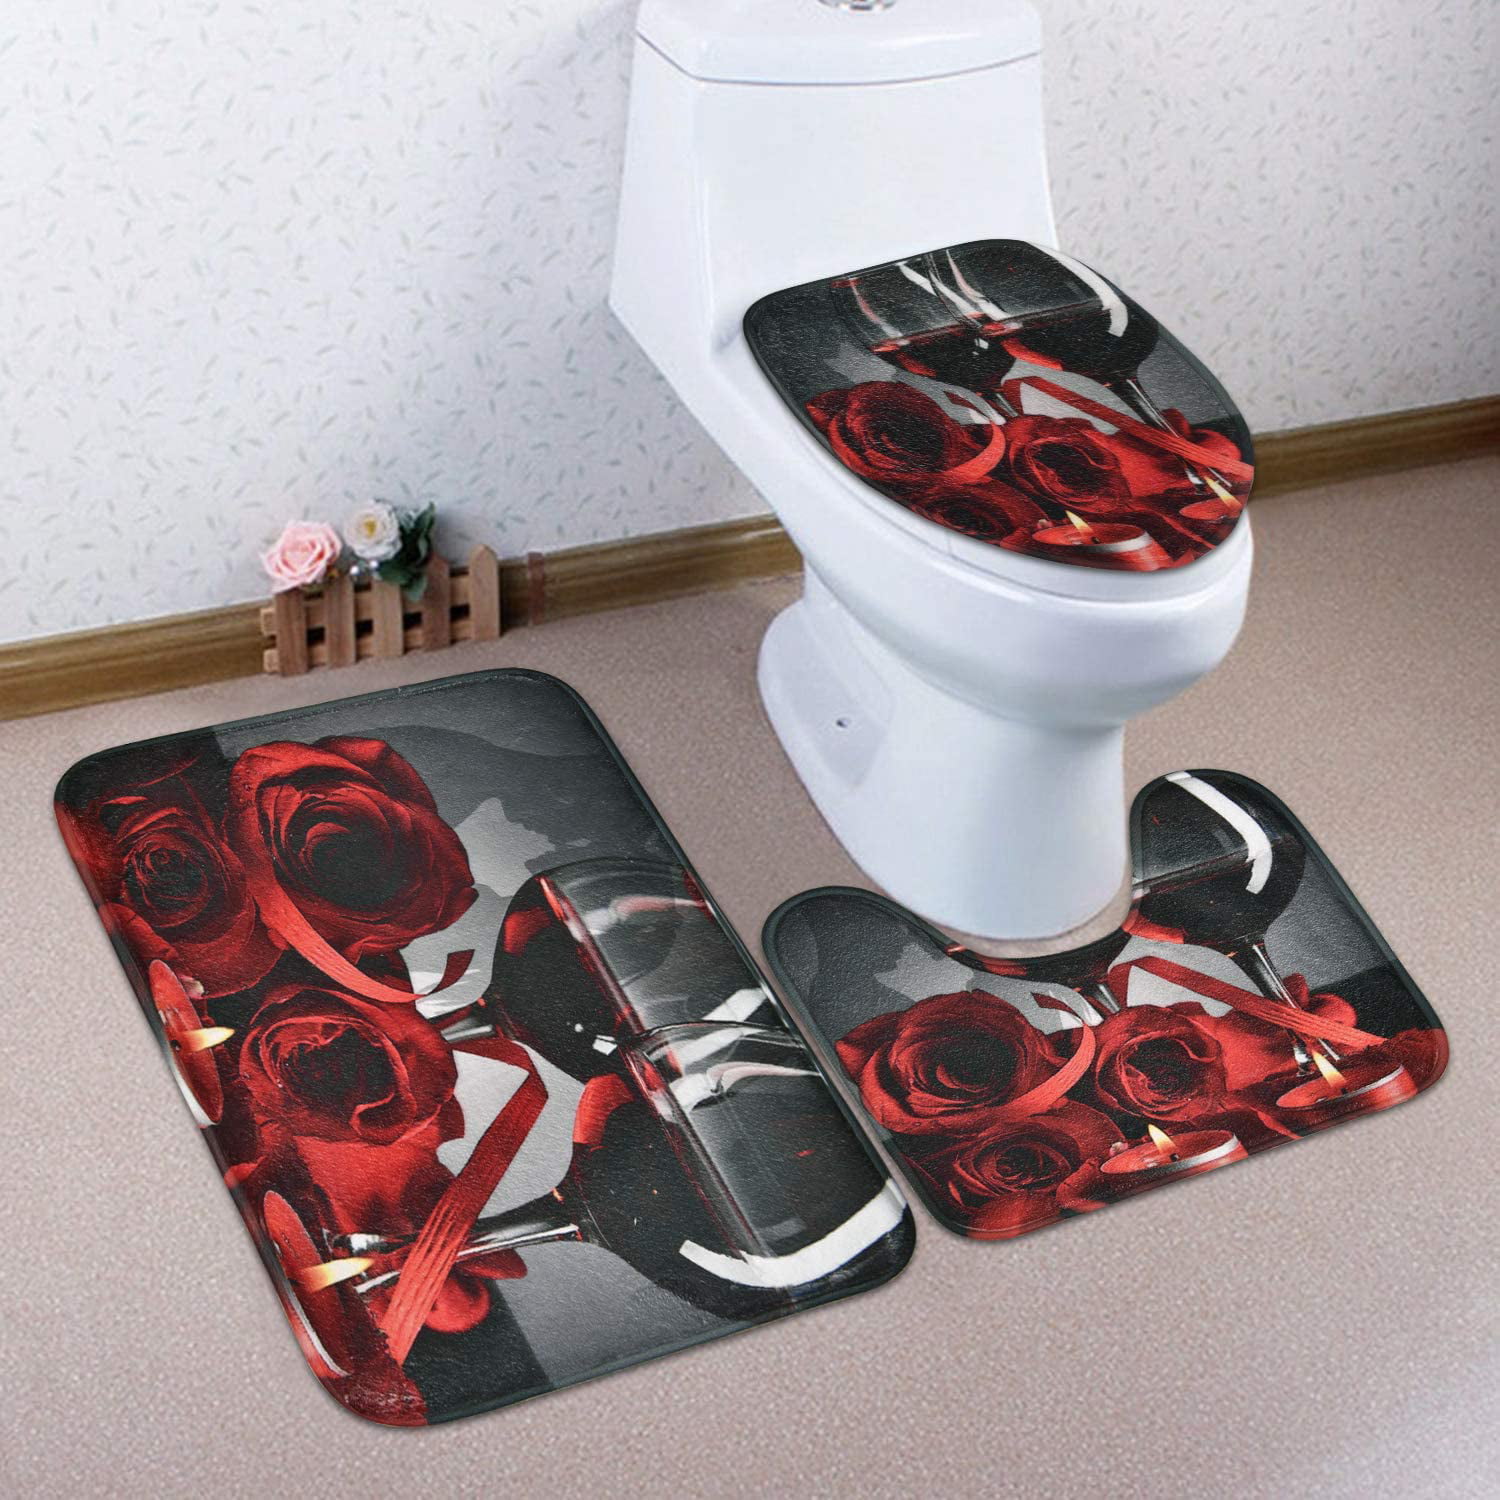 Details about   4Pcs Non-Slip Pedestal Rug Lid Toilet Cover Bathroom Bath Mat Doormat Set 